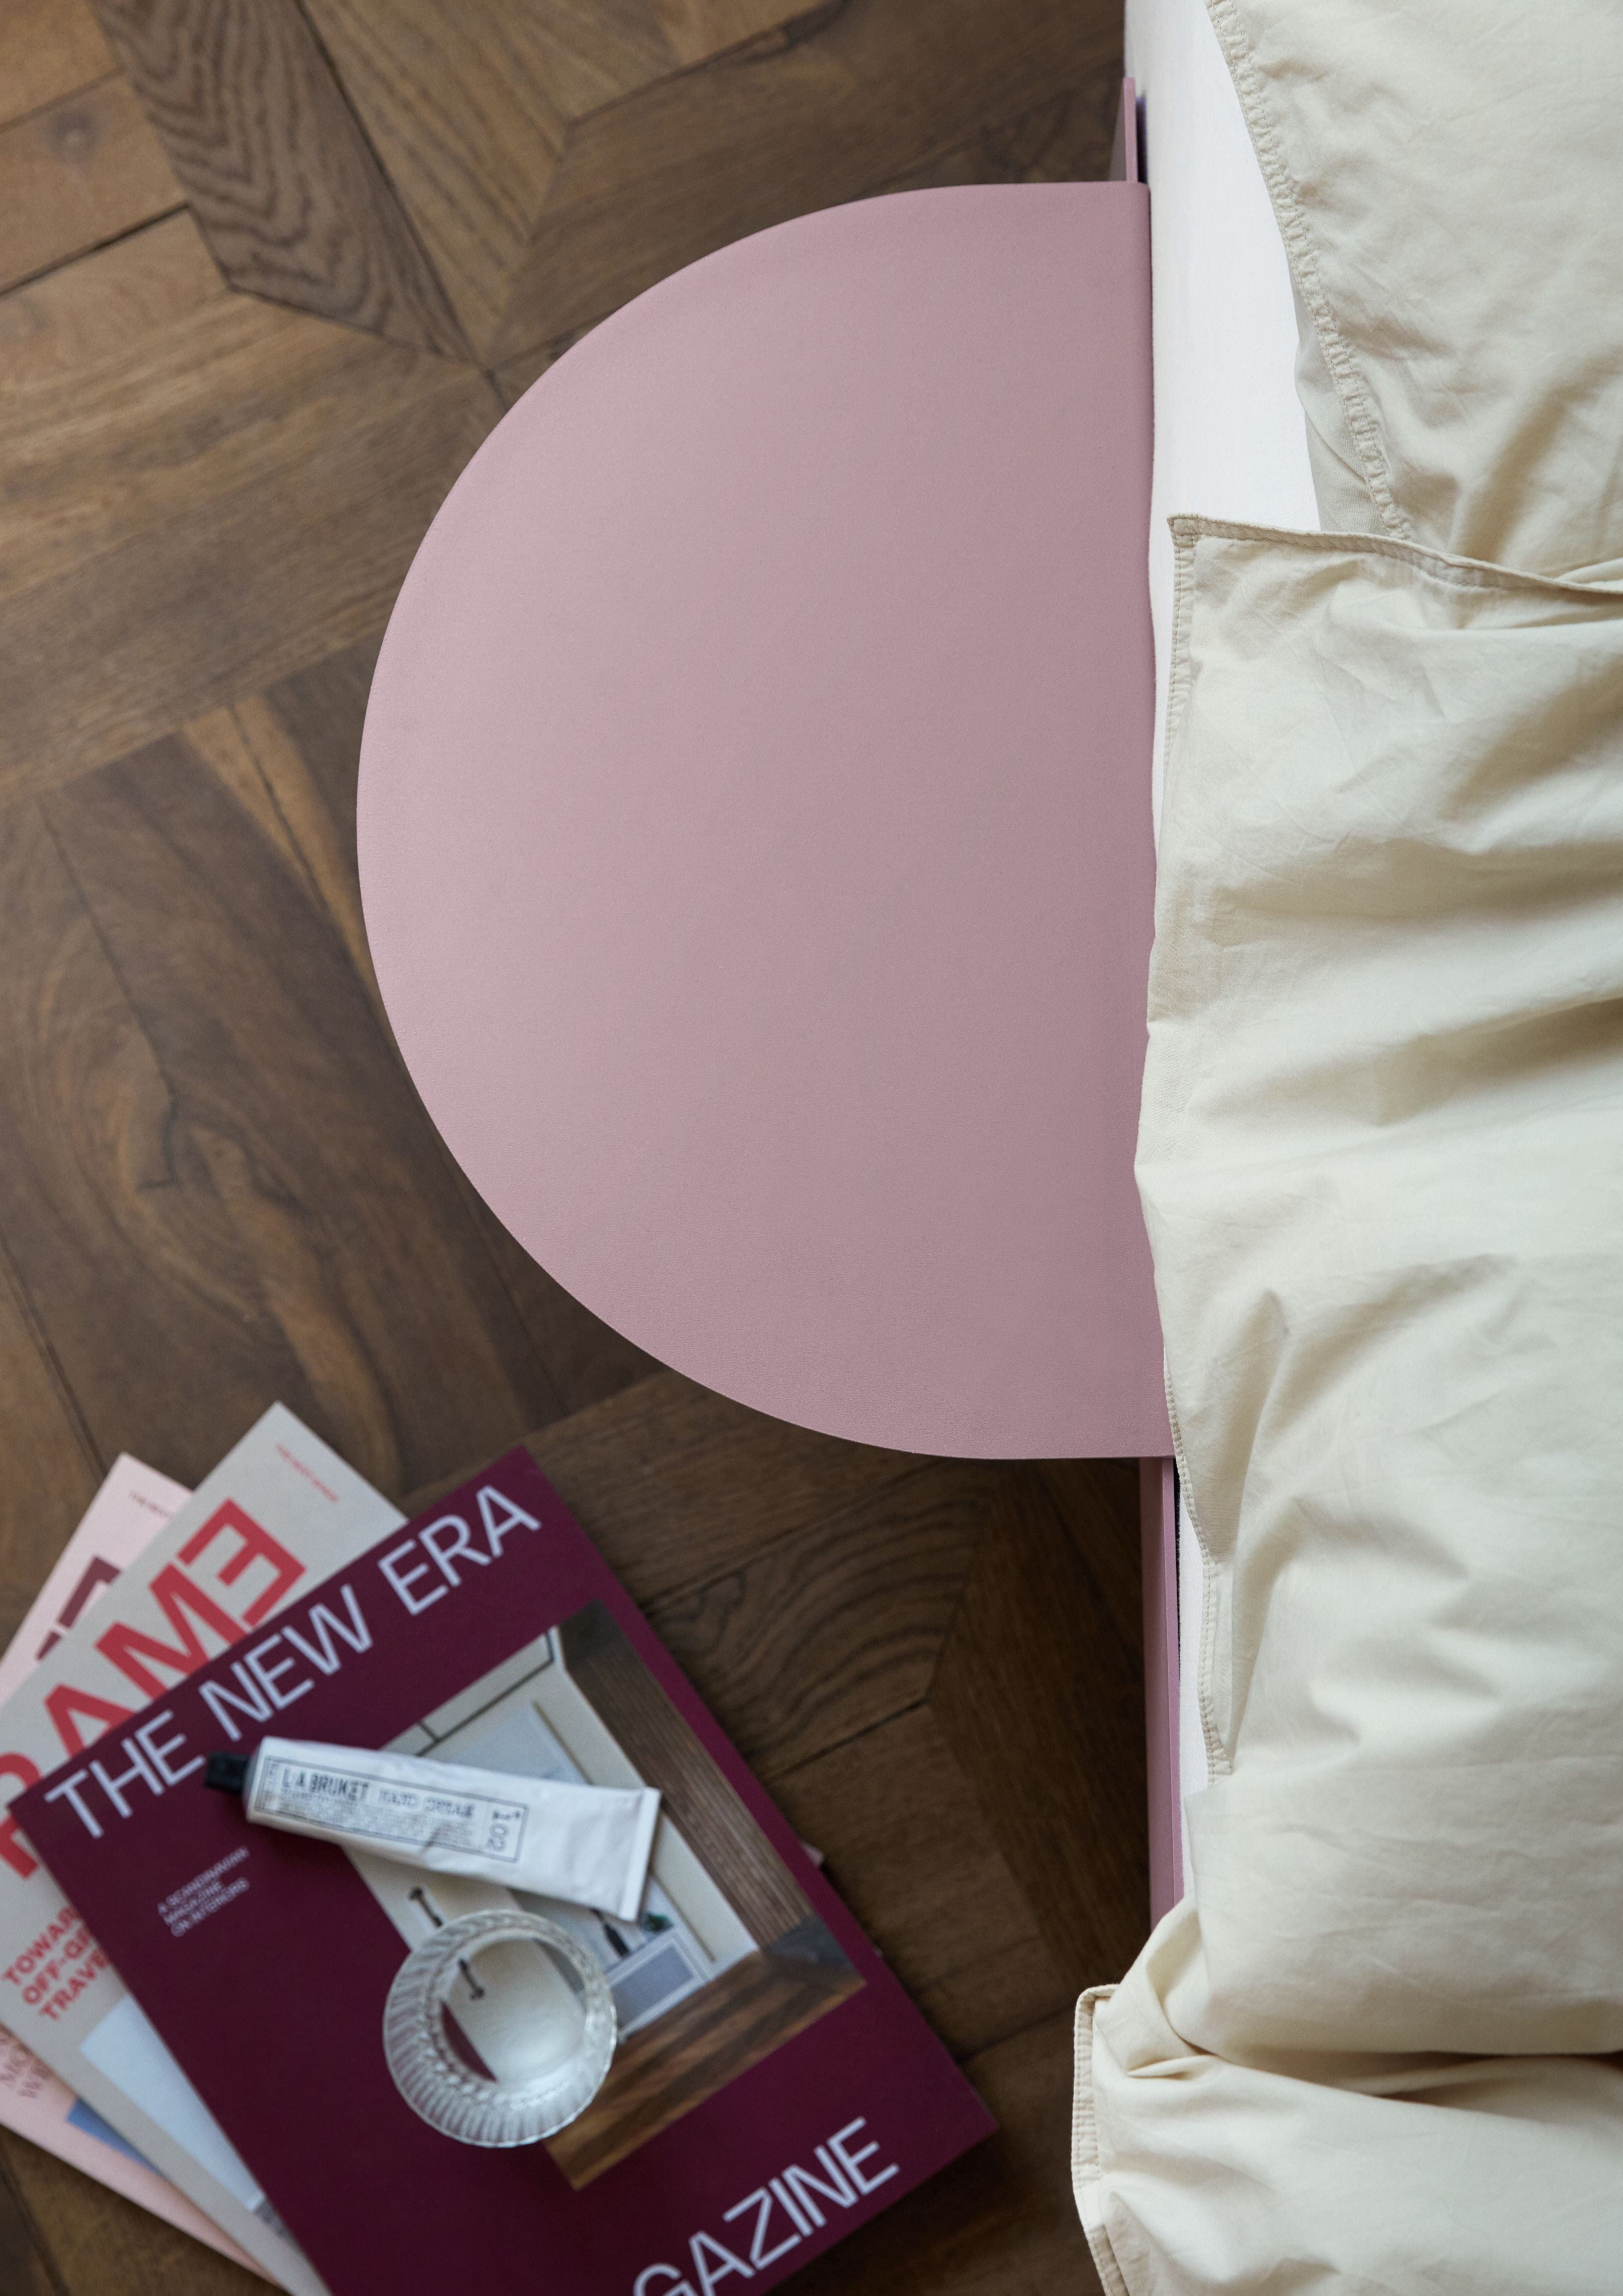 Cama moebe con listones de cama 160 cm, rosa polvorienta